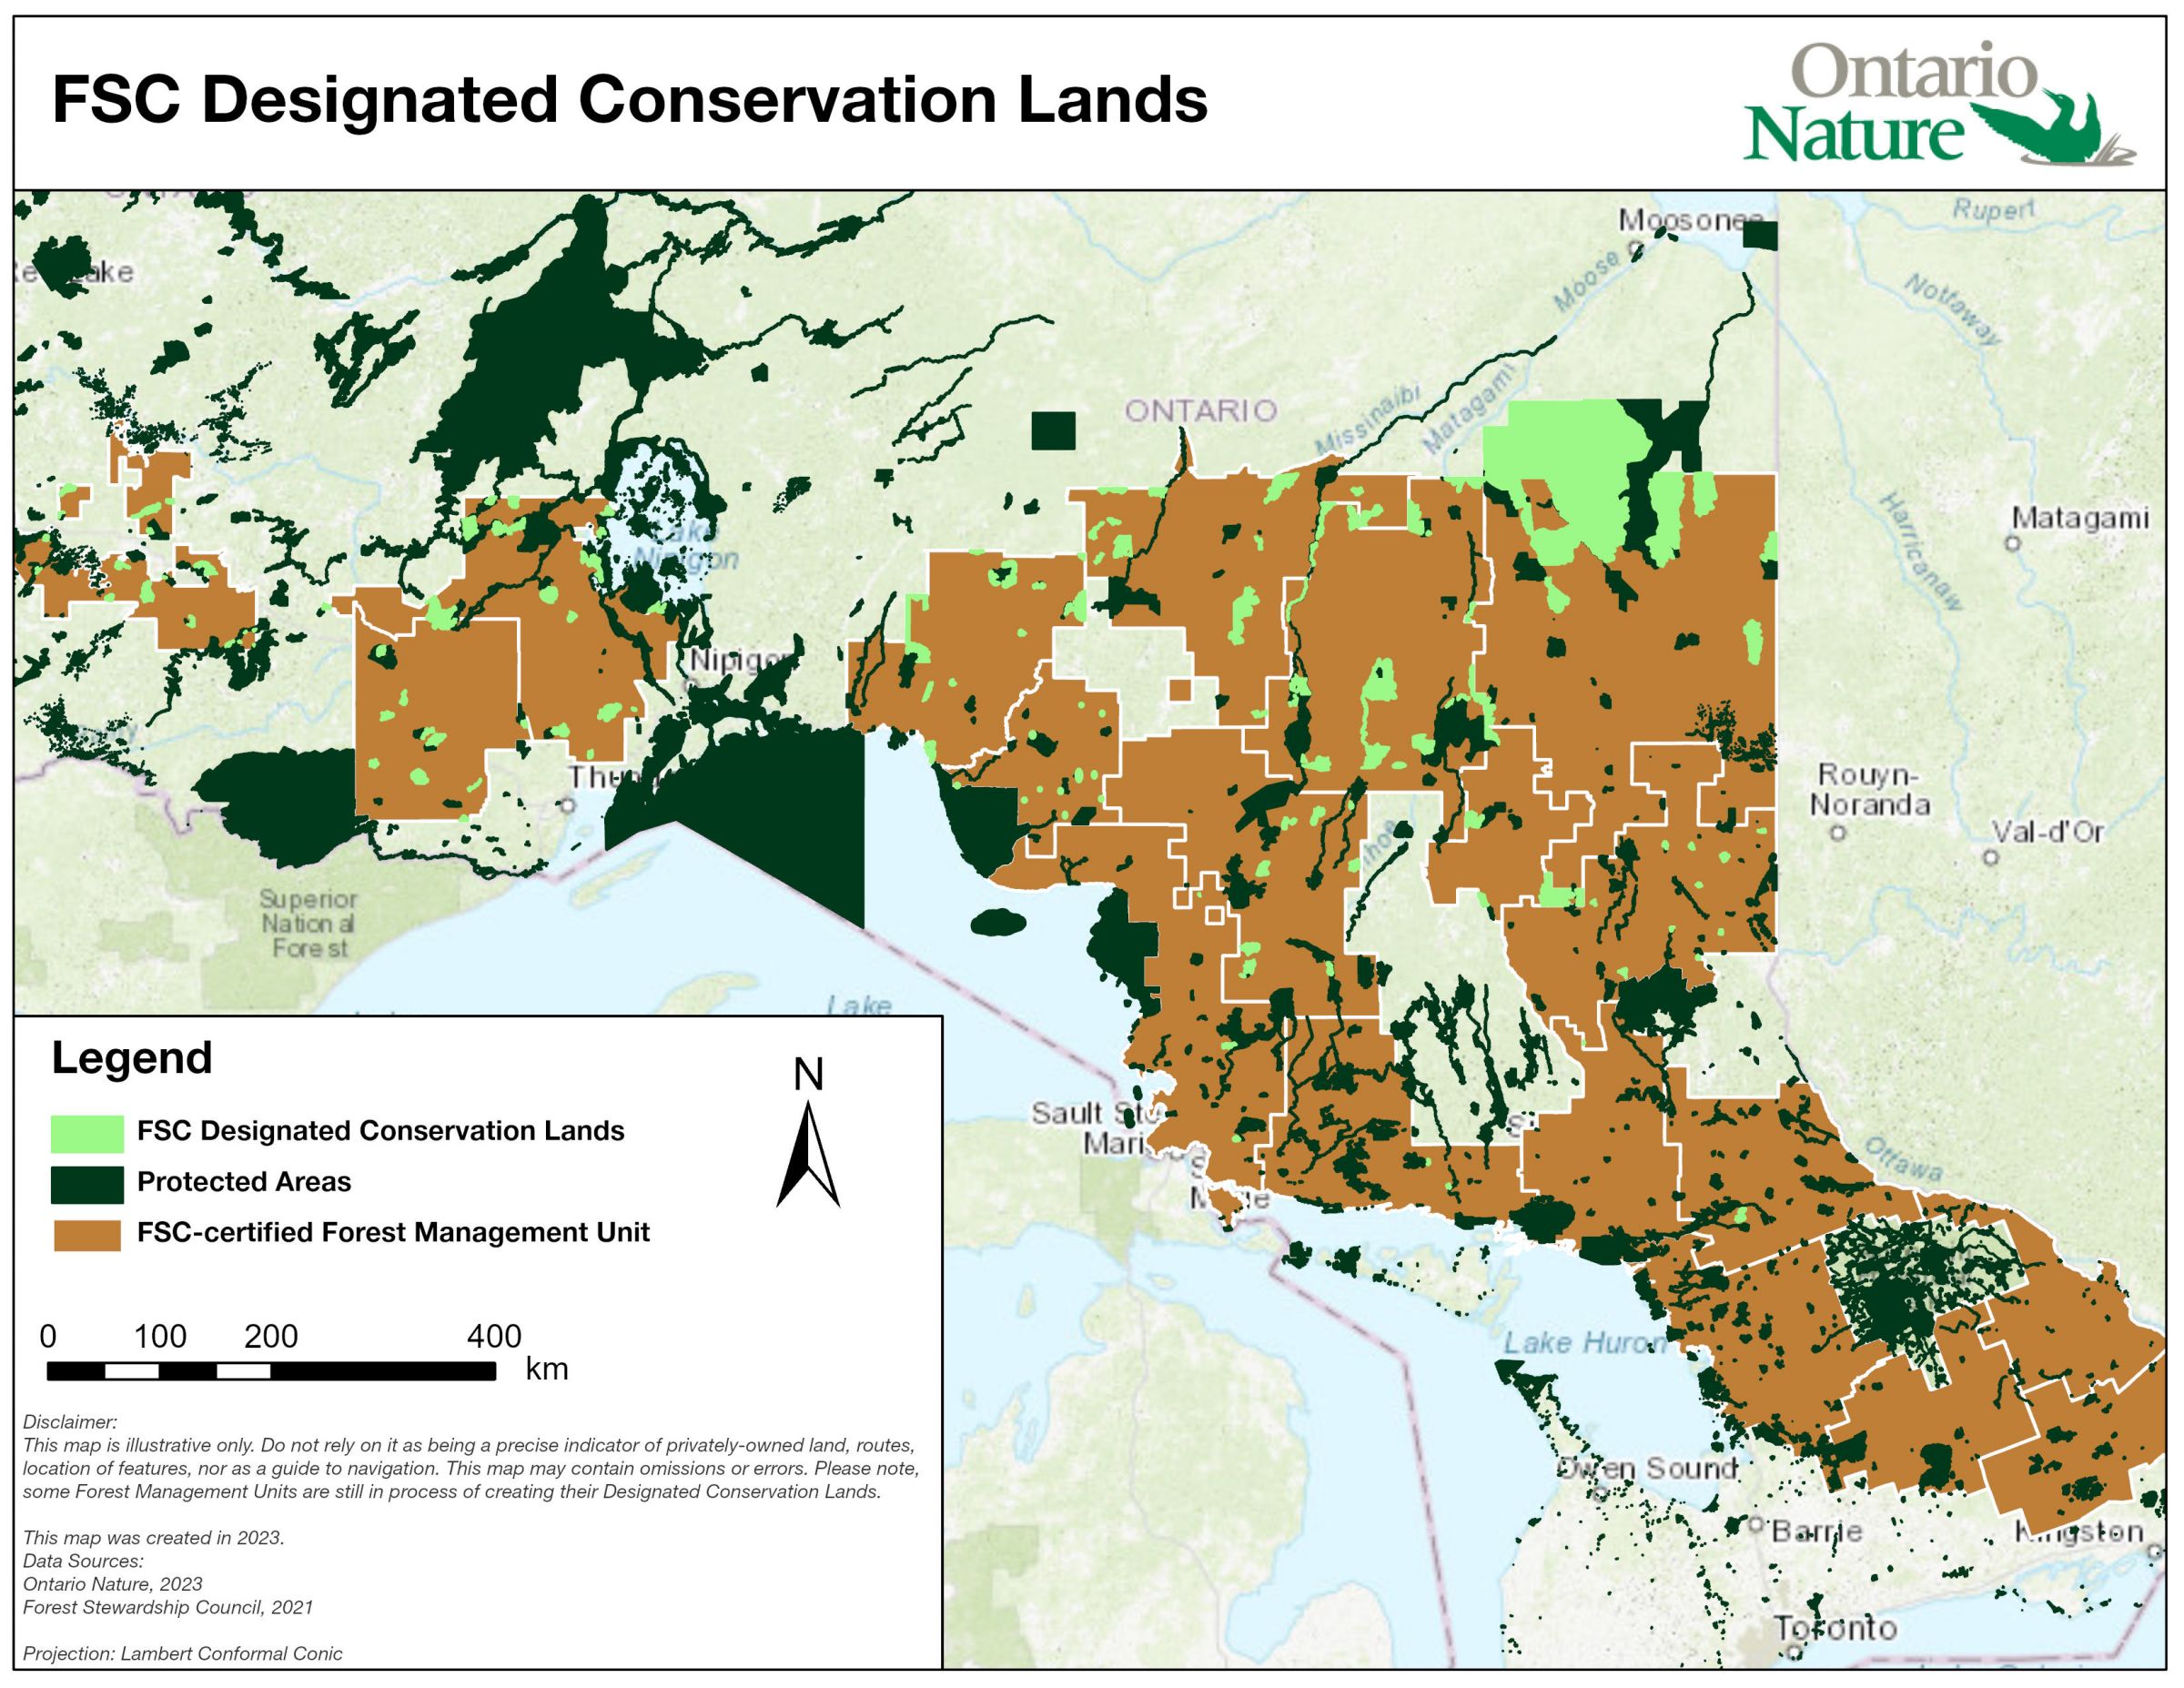 FSC Designated Conservation Lands